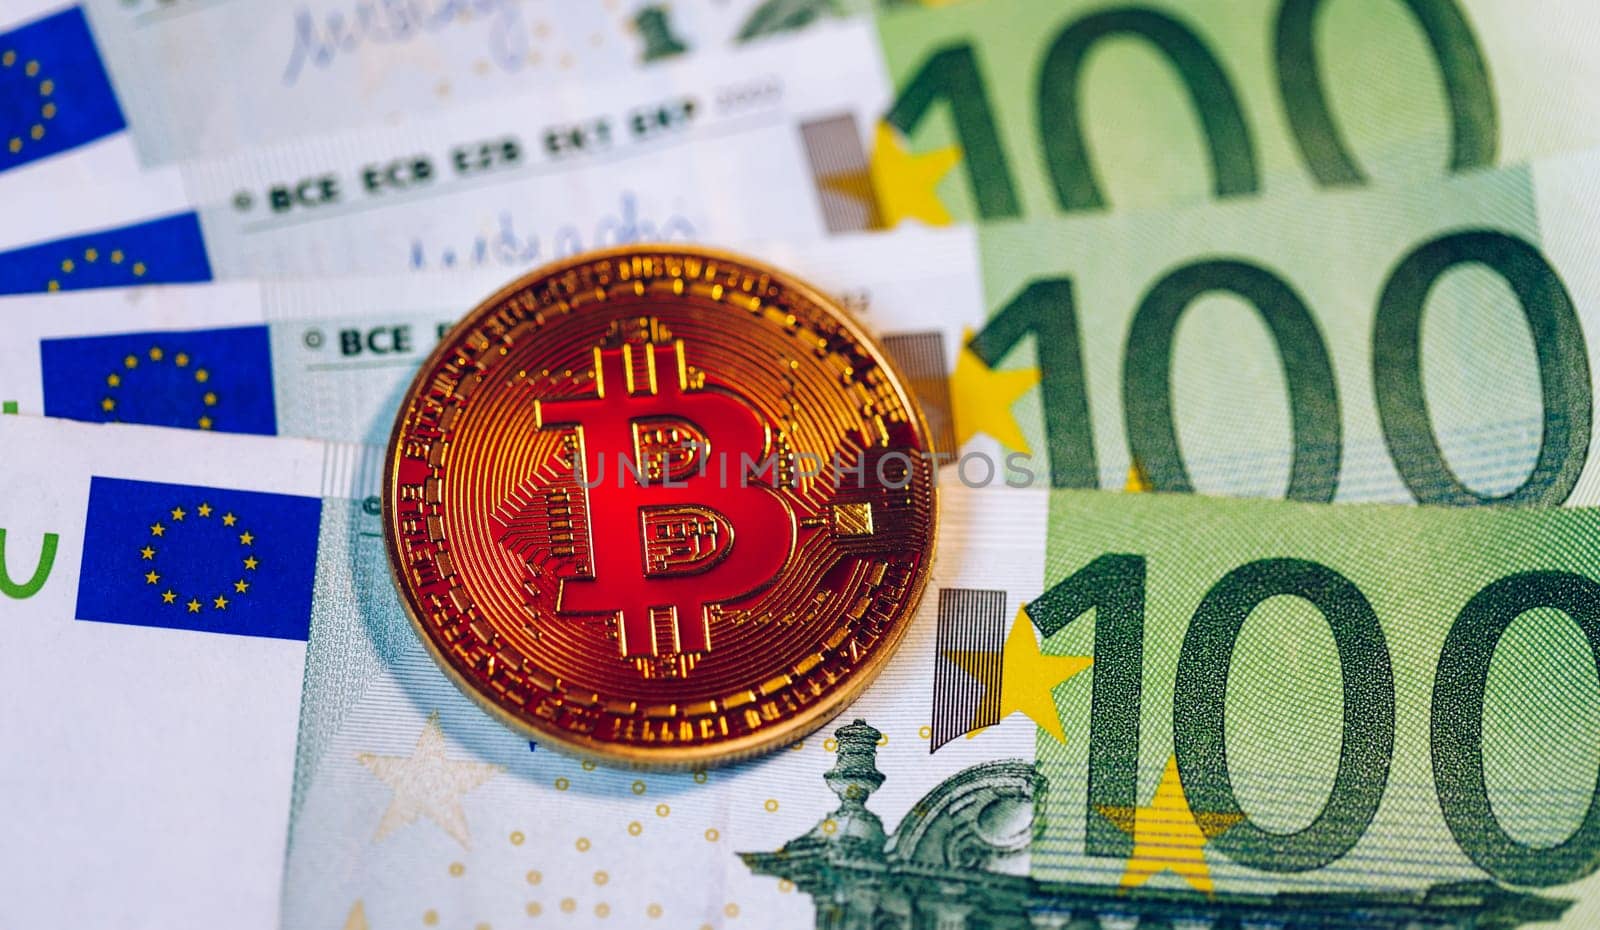 Golden bitcoin over Euro money. Bitcoin cryptocurrency. Crypto currency concept. Bitcoin with euro bills. Bitcoins stacked on euro banknotes.